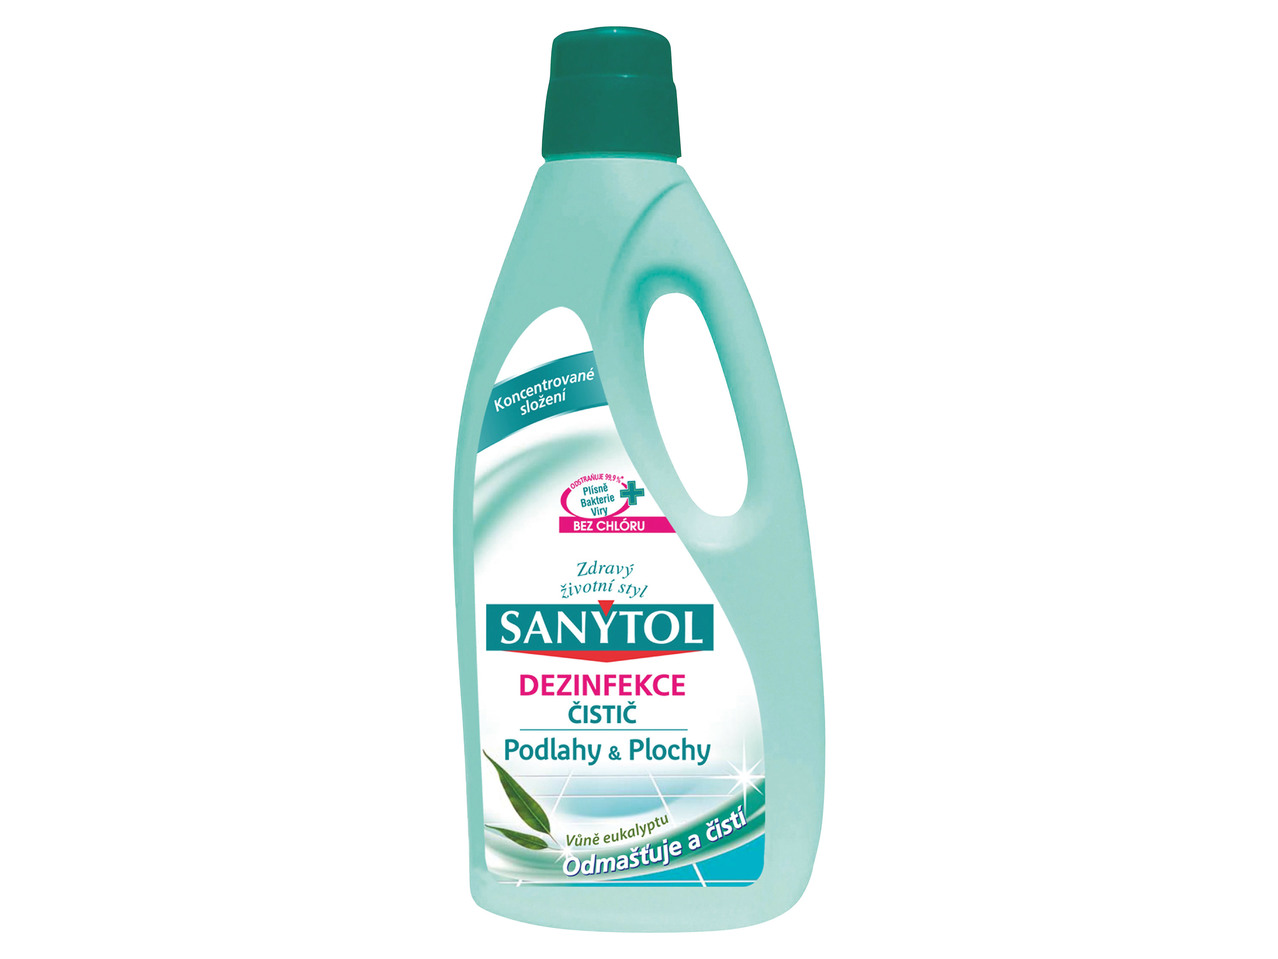 Sanytol dezinfekce čistič podlahy & plochy